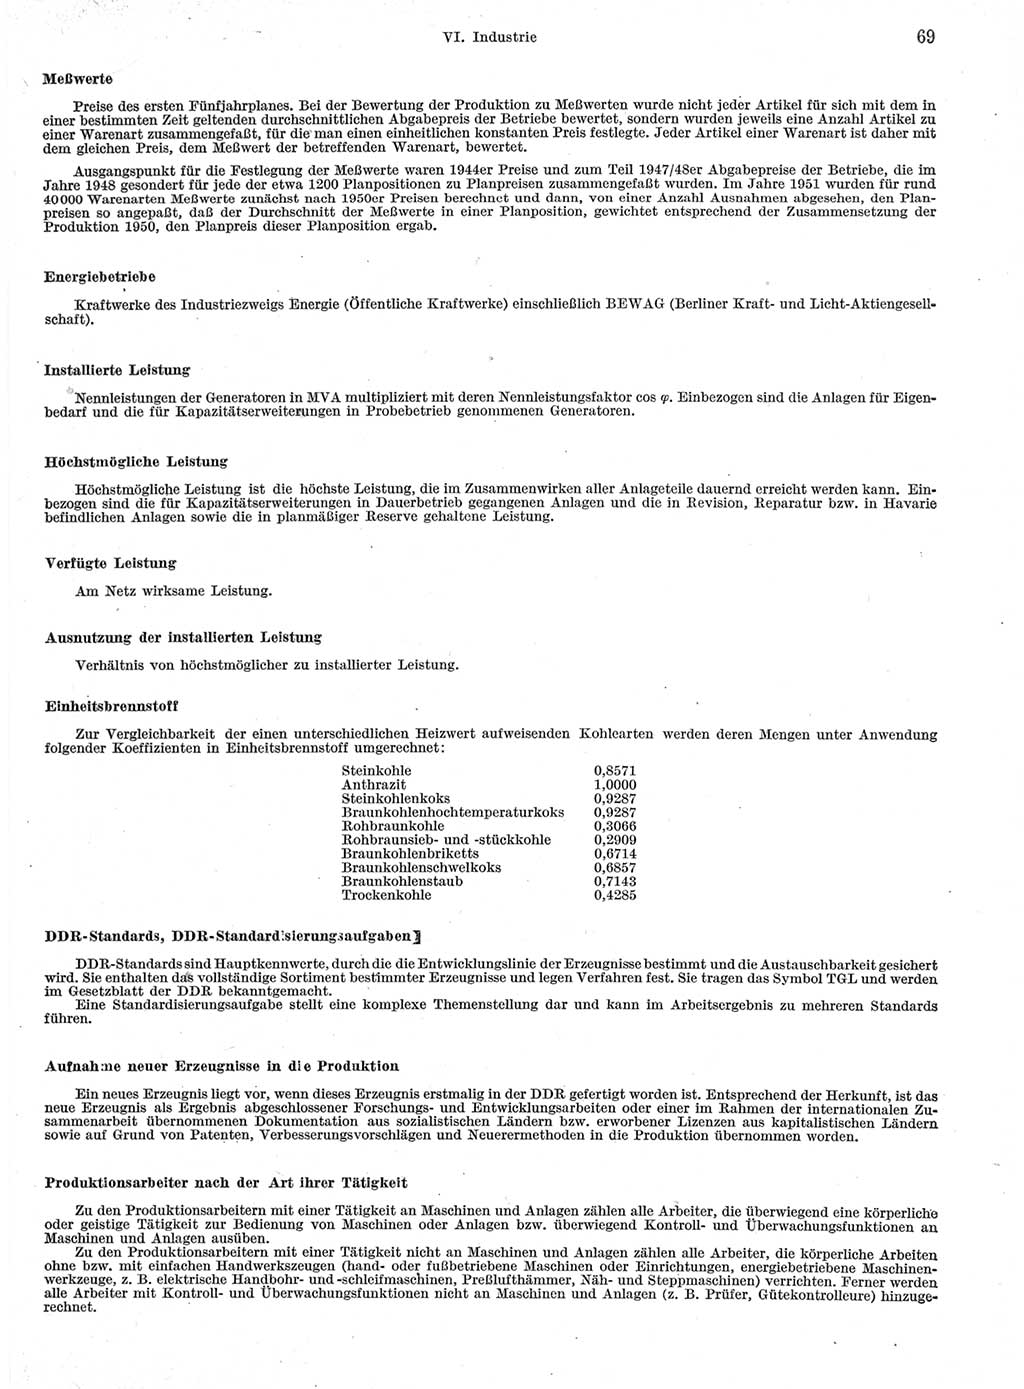 Statistisches Jahrbuch der Deutschen Demokratischen Republik (DDR) 1963, Seite 69 (Stat. Jb. DDR 1963, S. 69)